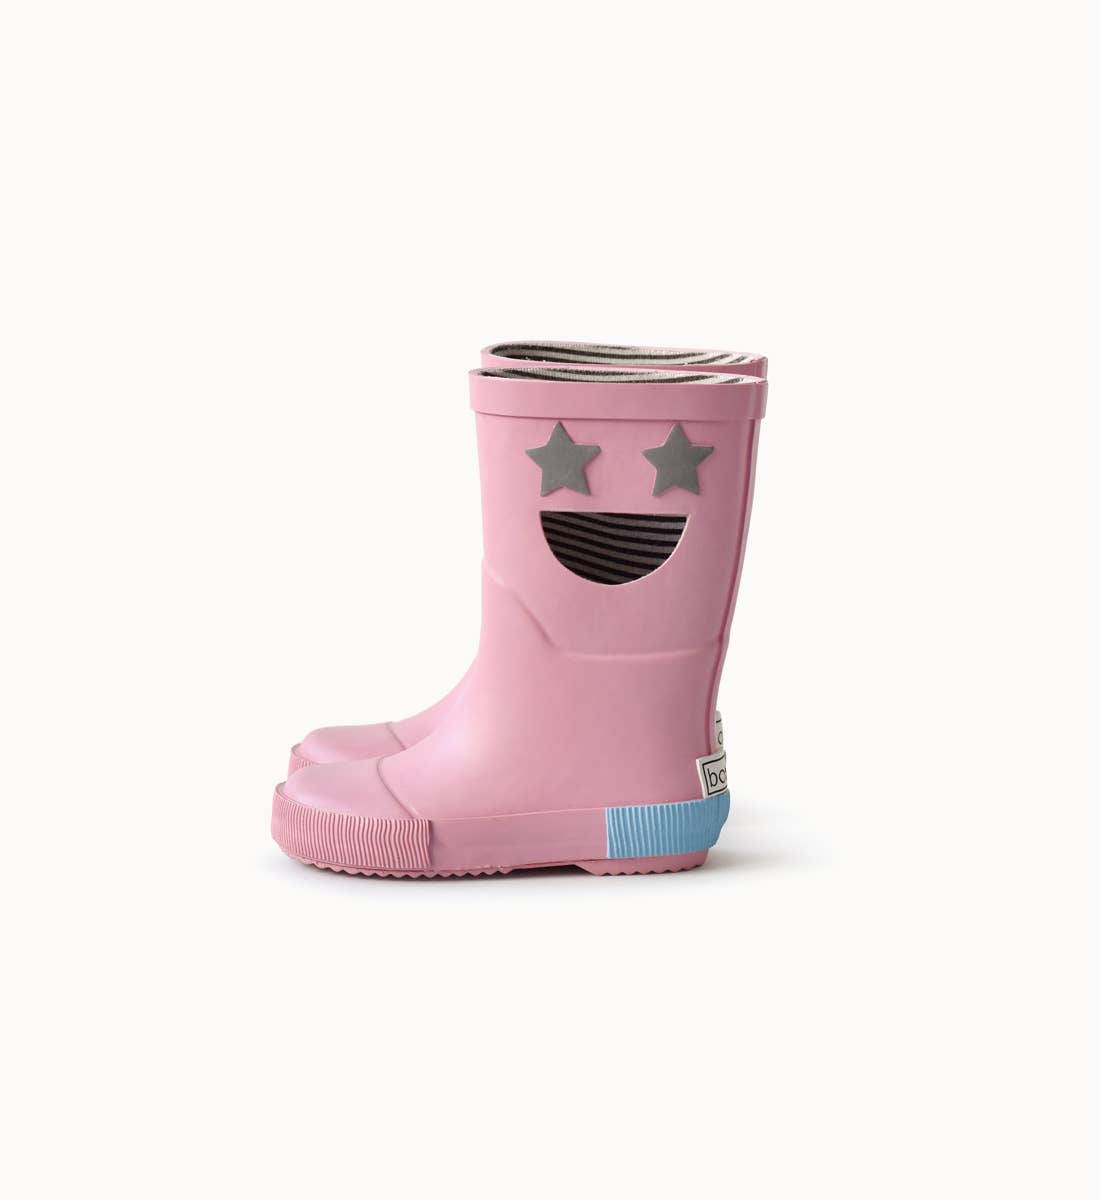 WISTITI Star Pink Rainboots